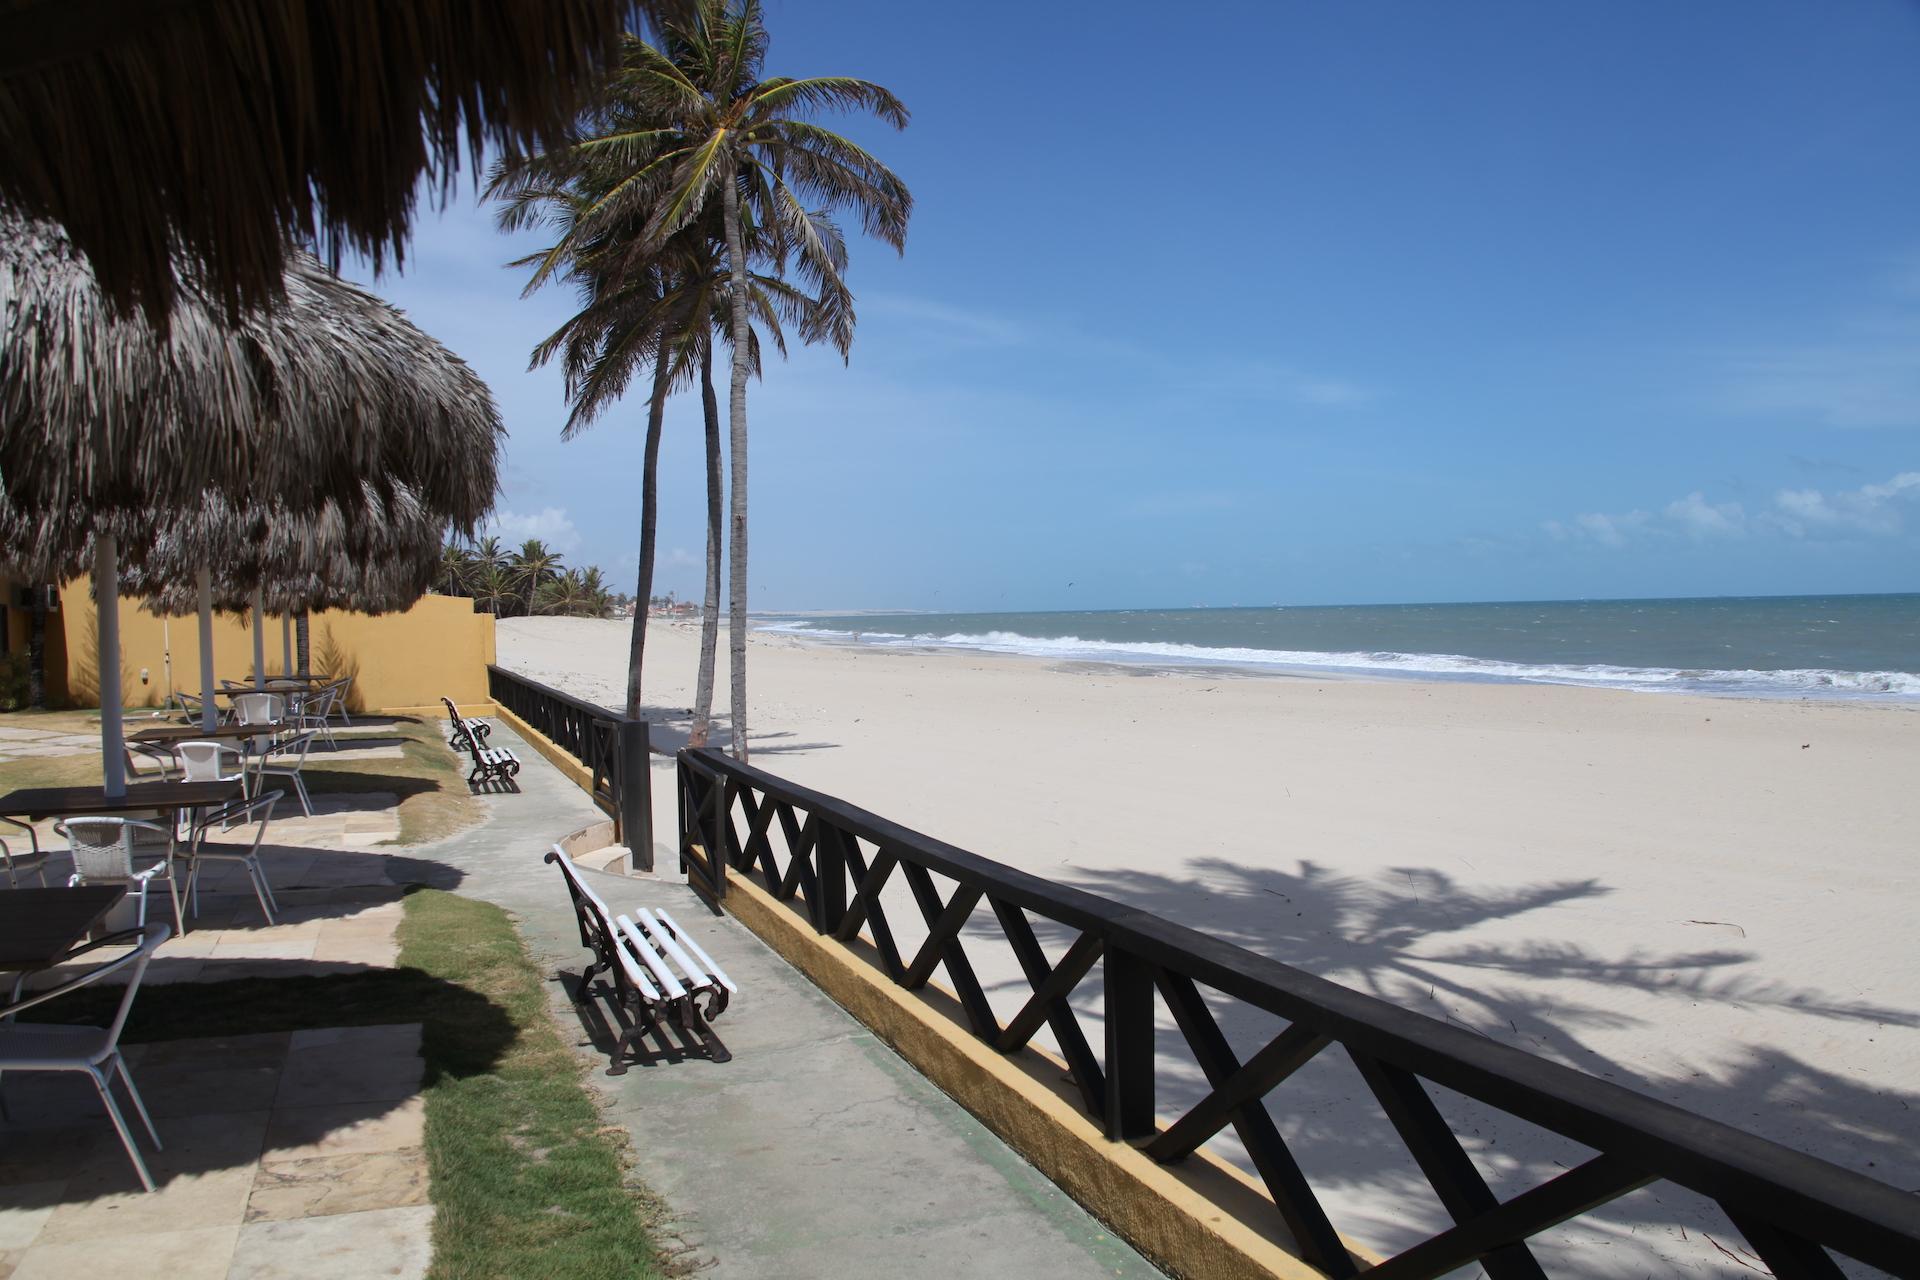 Sicht auf den Strand vor dem Hotel Golfinho in Cumbuco, Ceara - Brasilien